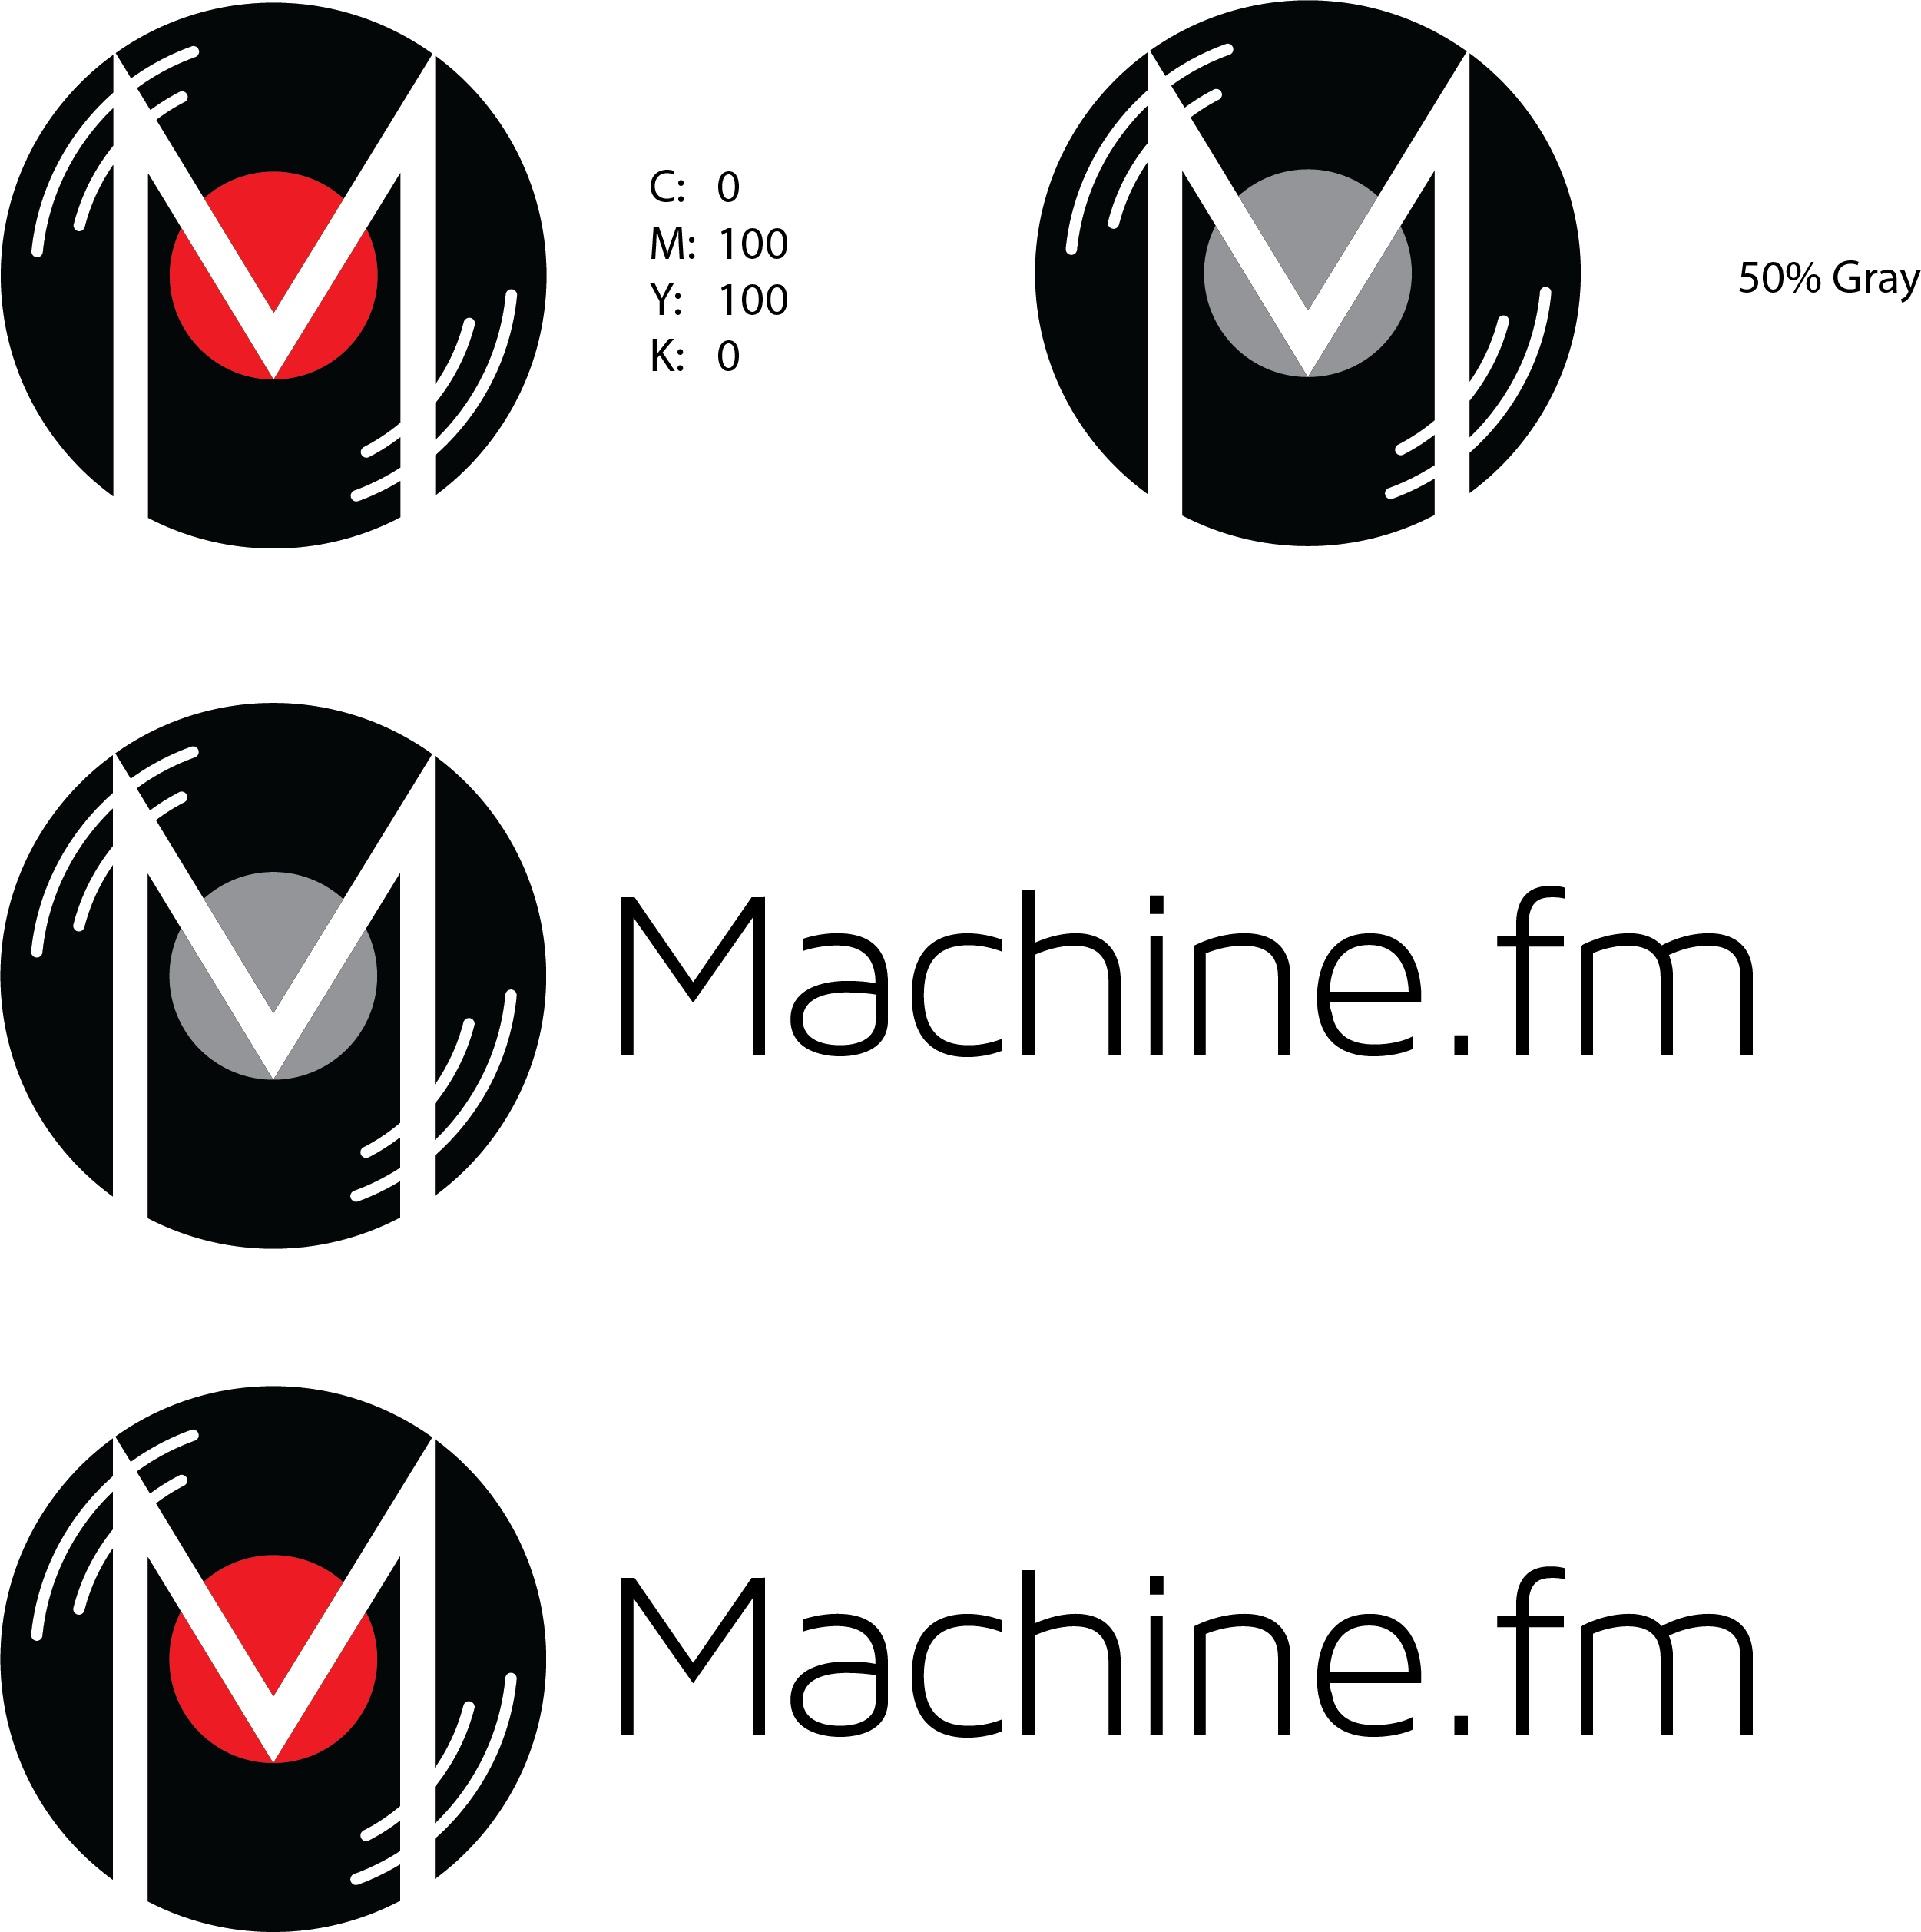 Logo specimens for The Machine